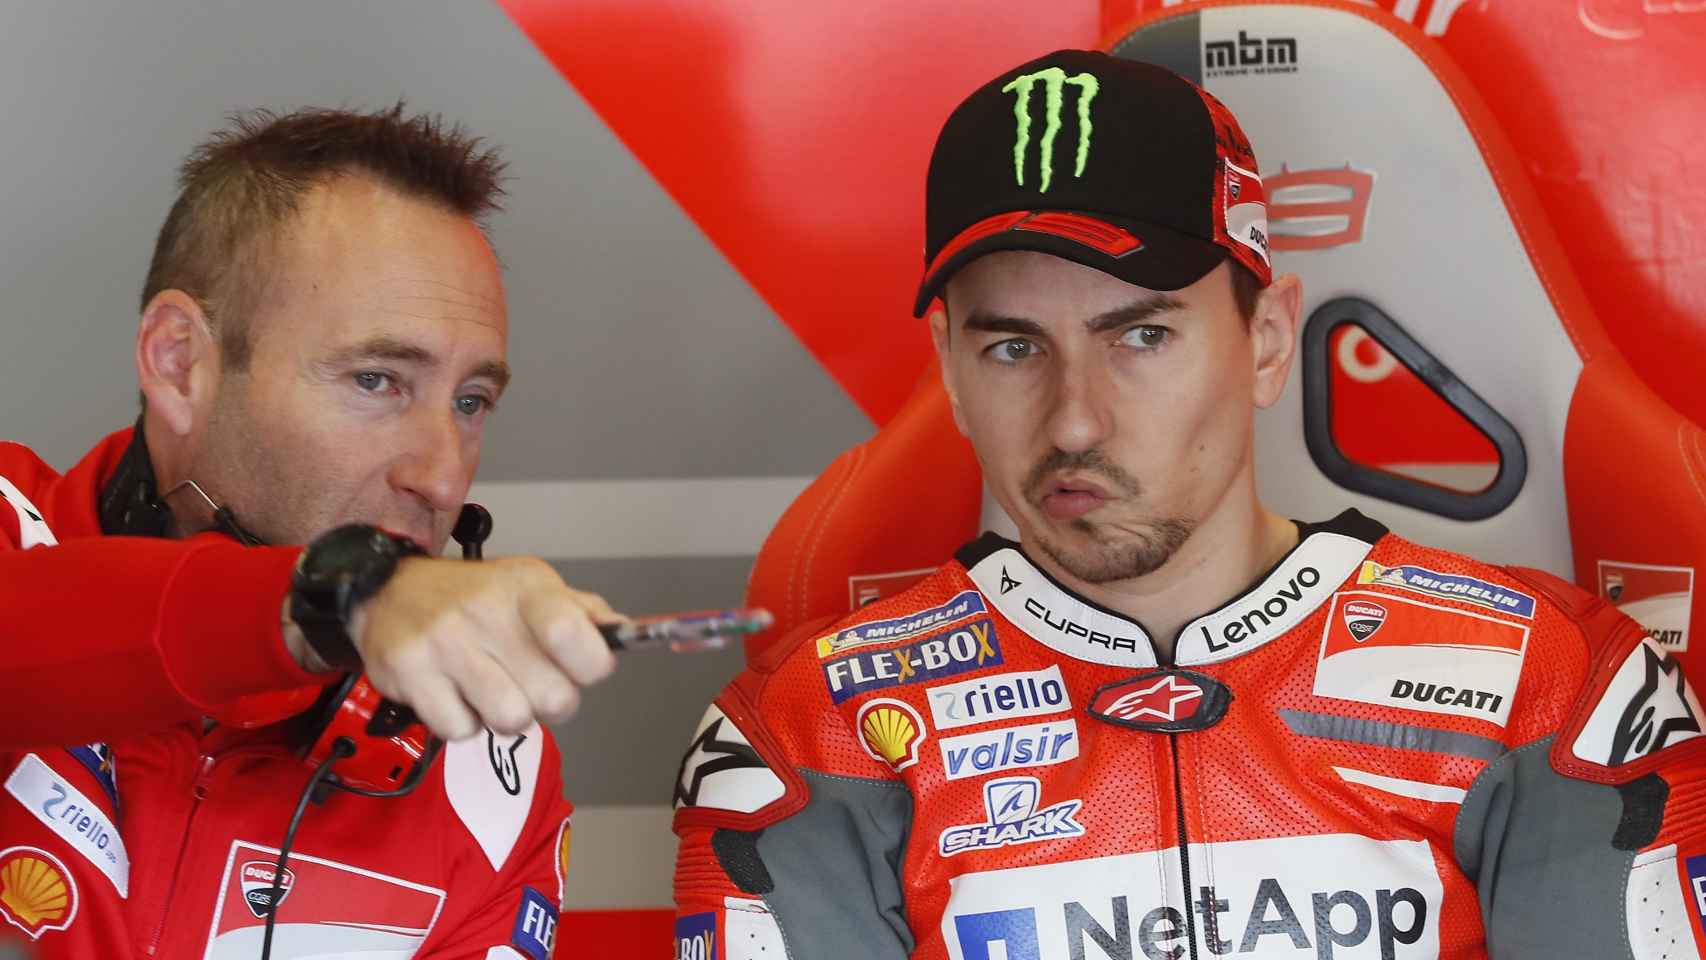 Lorenzo atiende las explicaciones de Christian Gabarrini, su ingeniero jefe, en el box de Ducati.